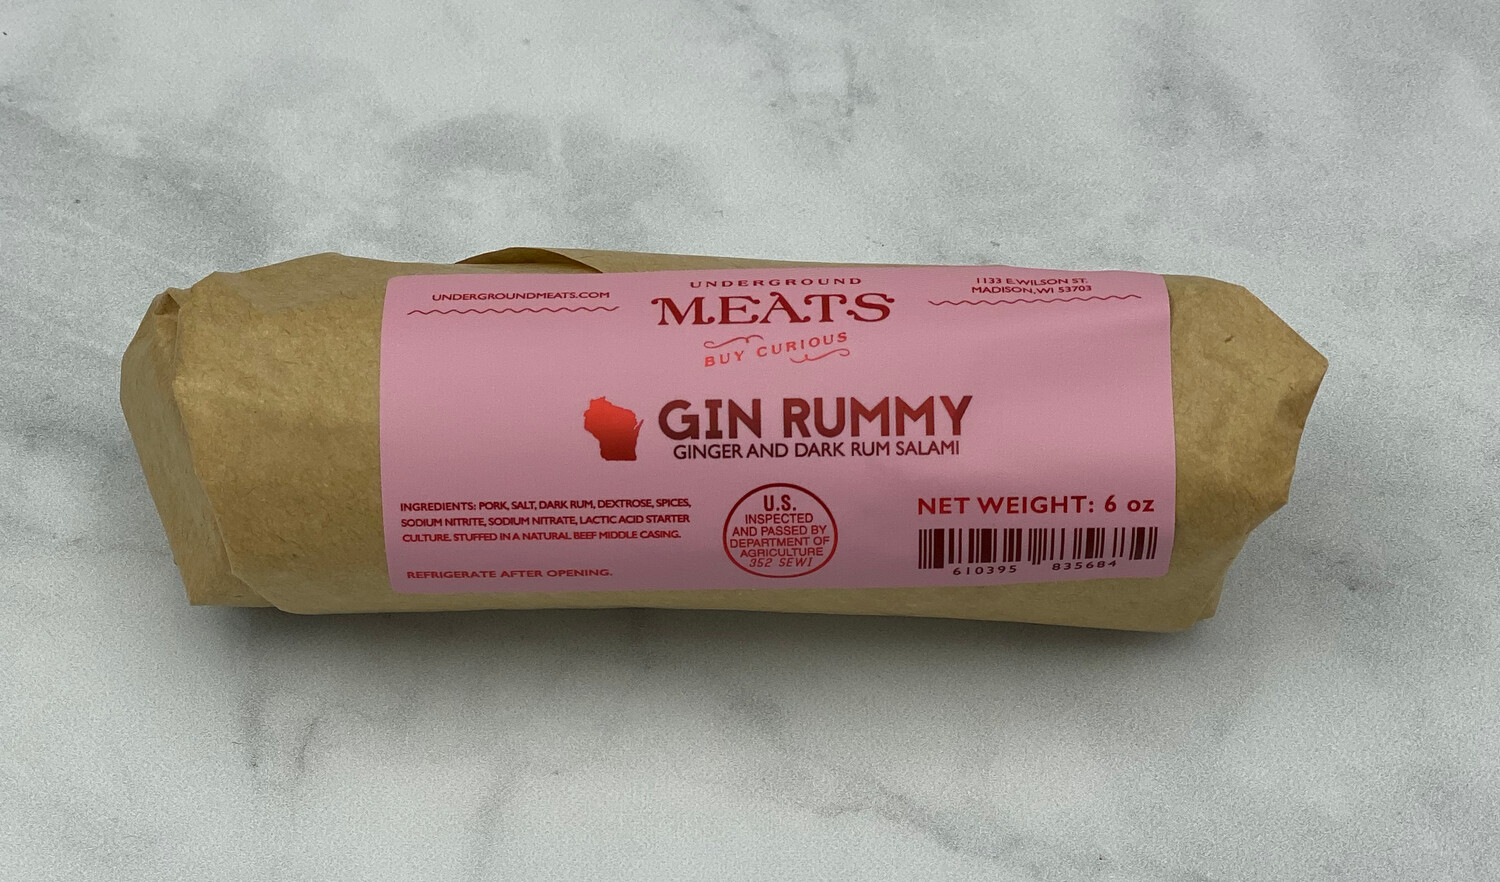 Gin Rummy Underground Meats